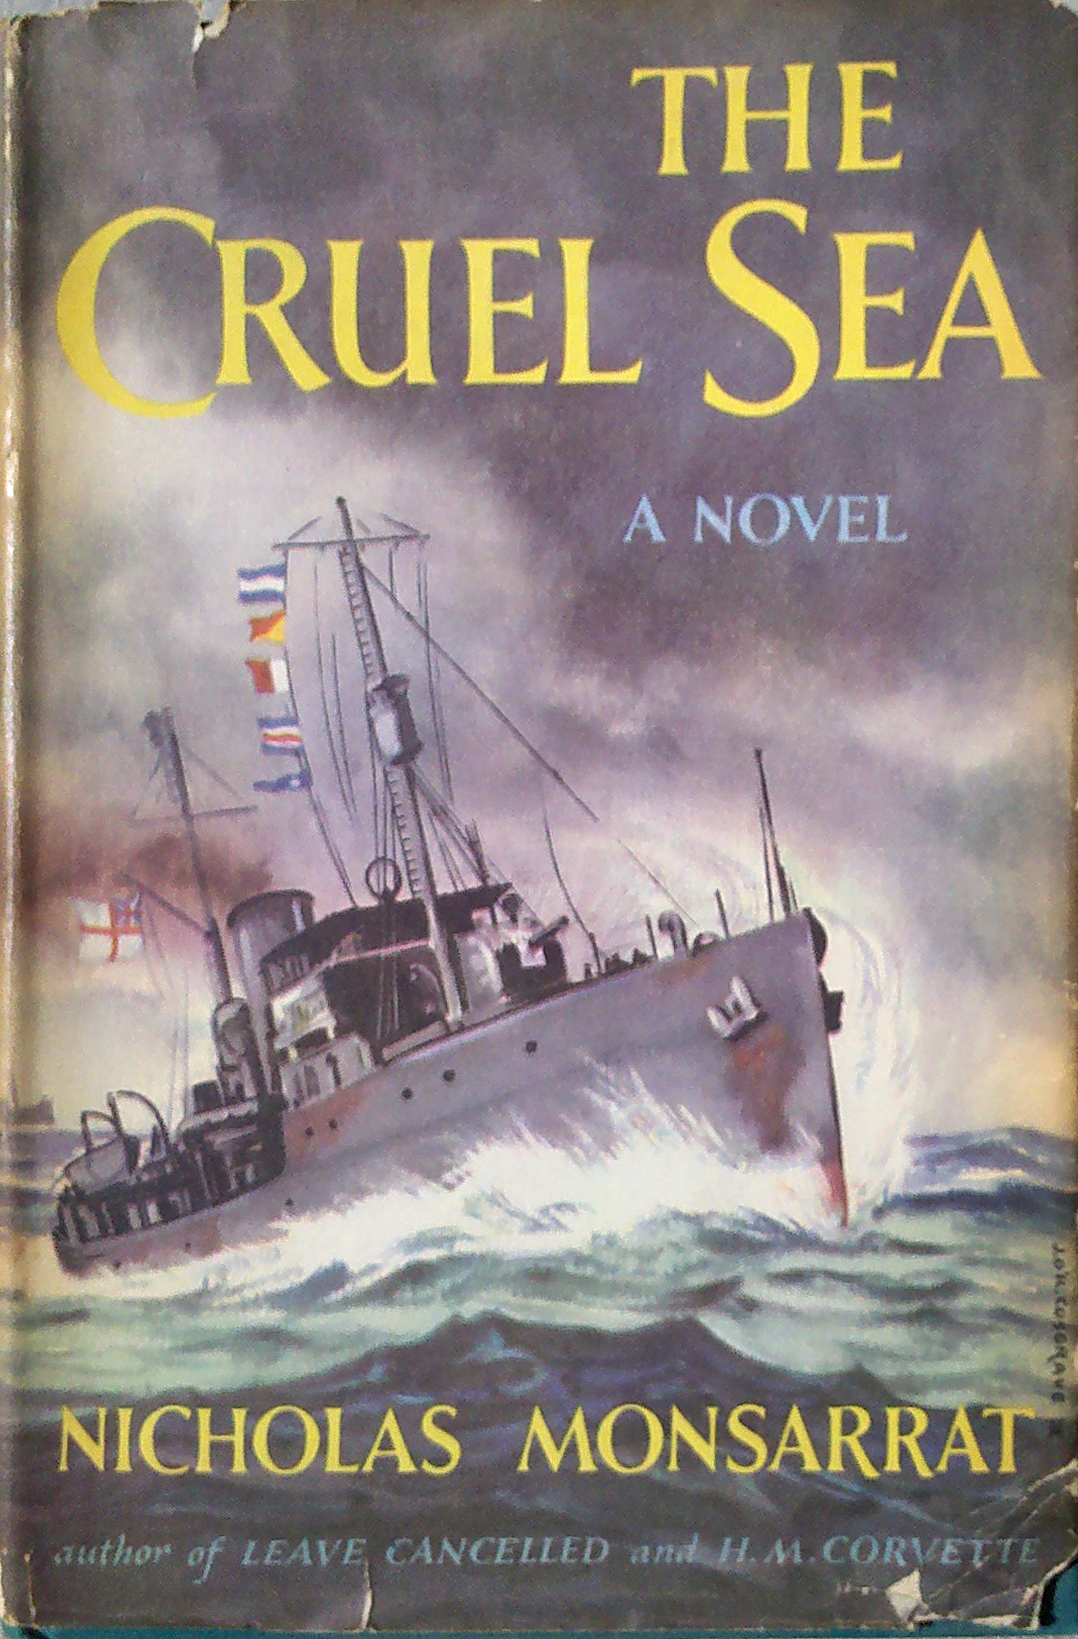 The Cruel Sea, Knopf edition, 1951